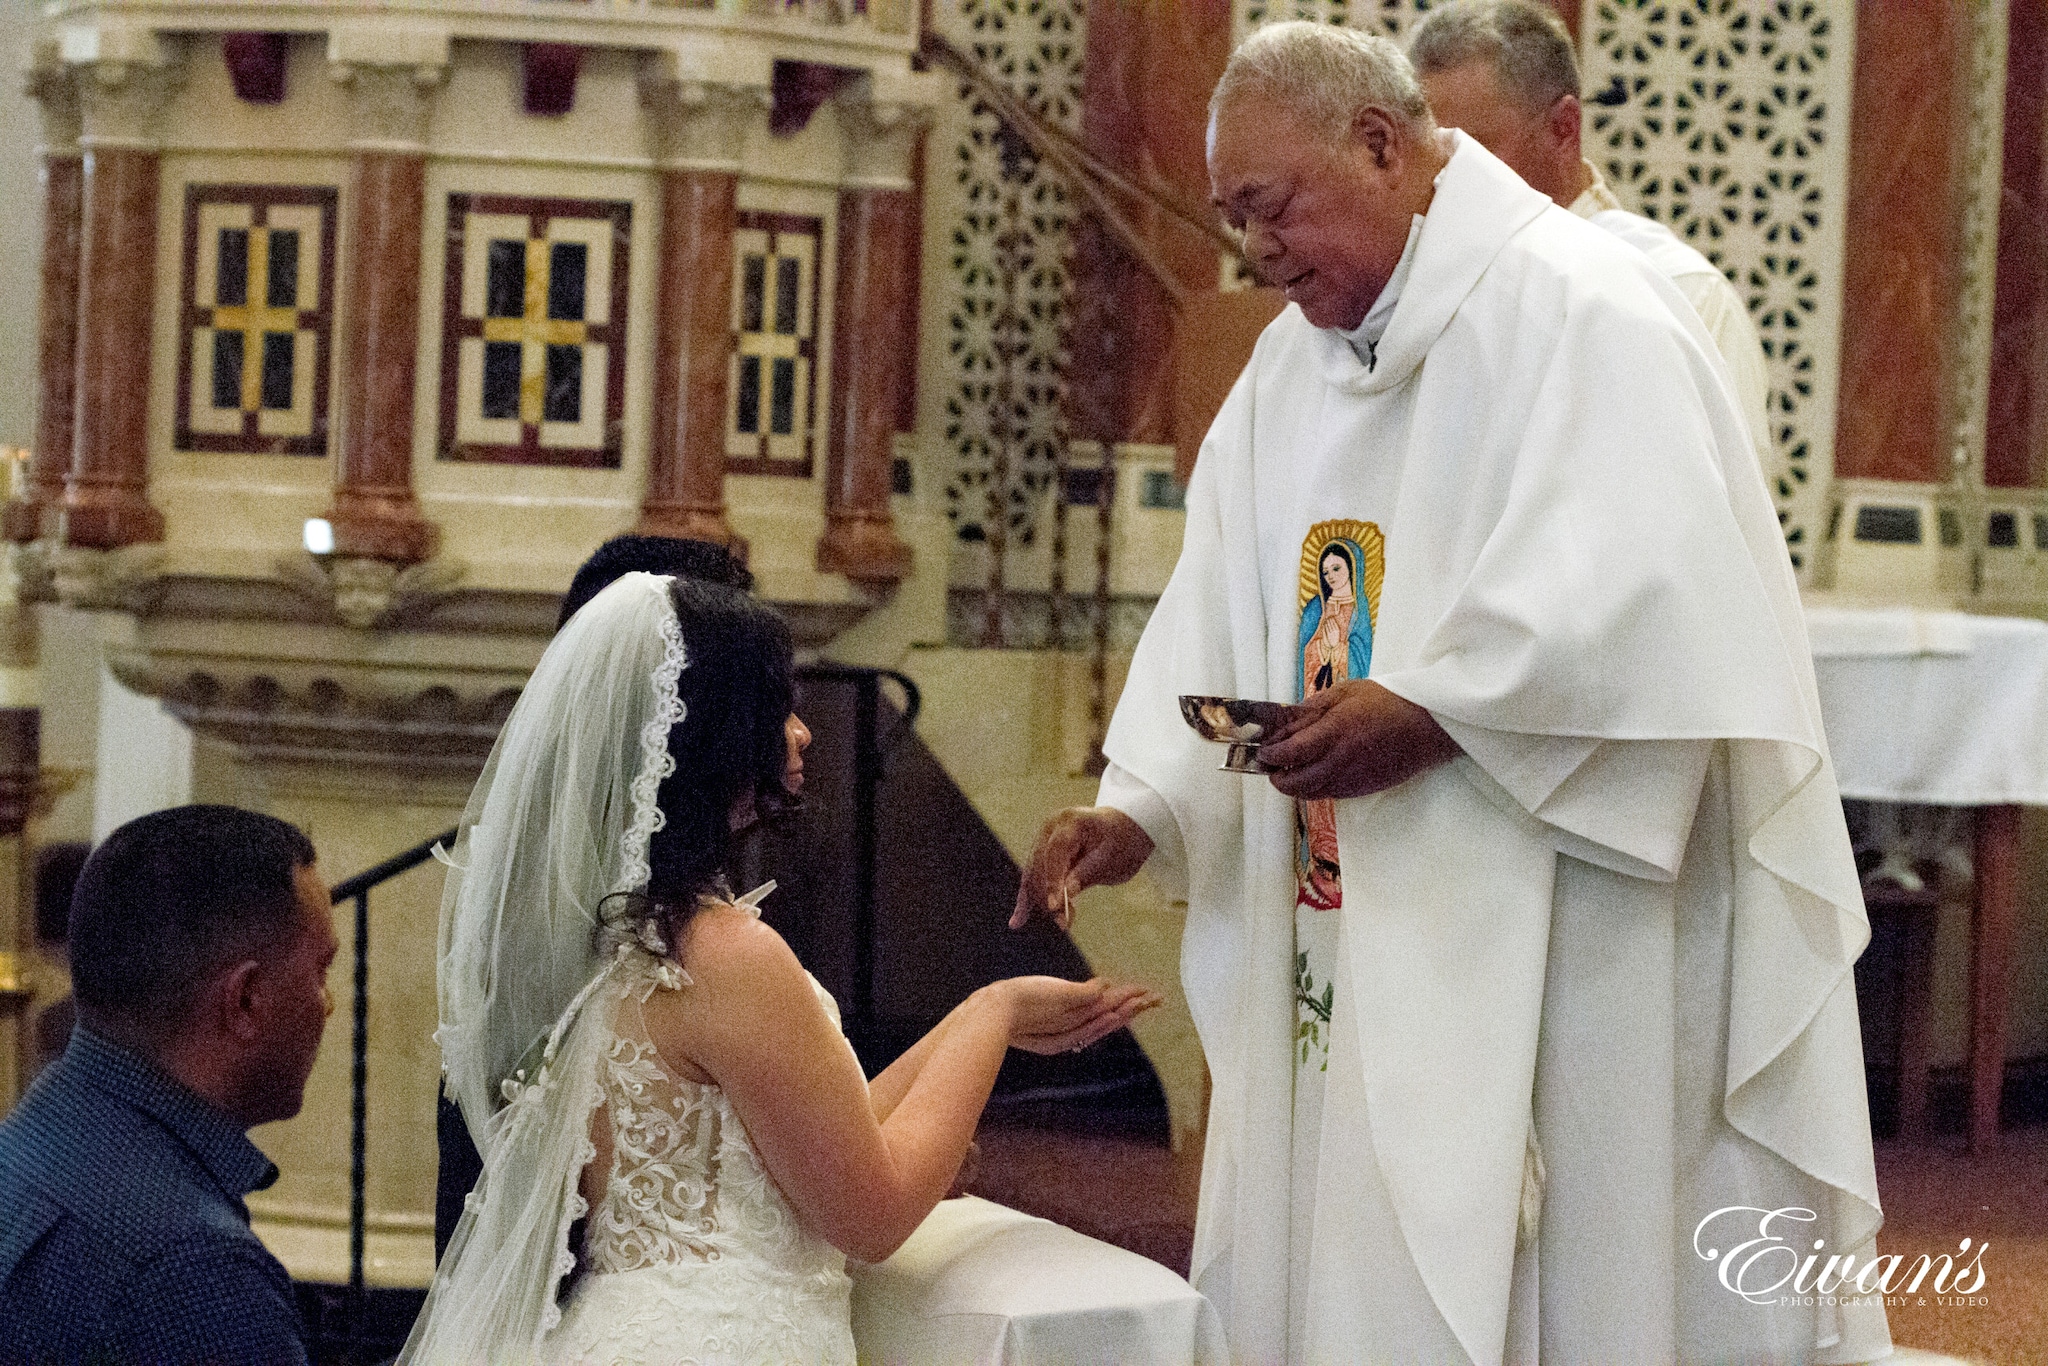 Catholic veils for wedding and worship